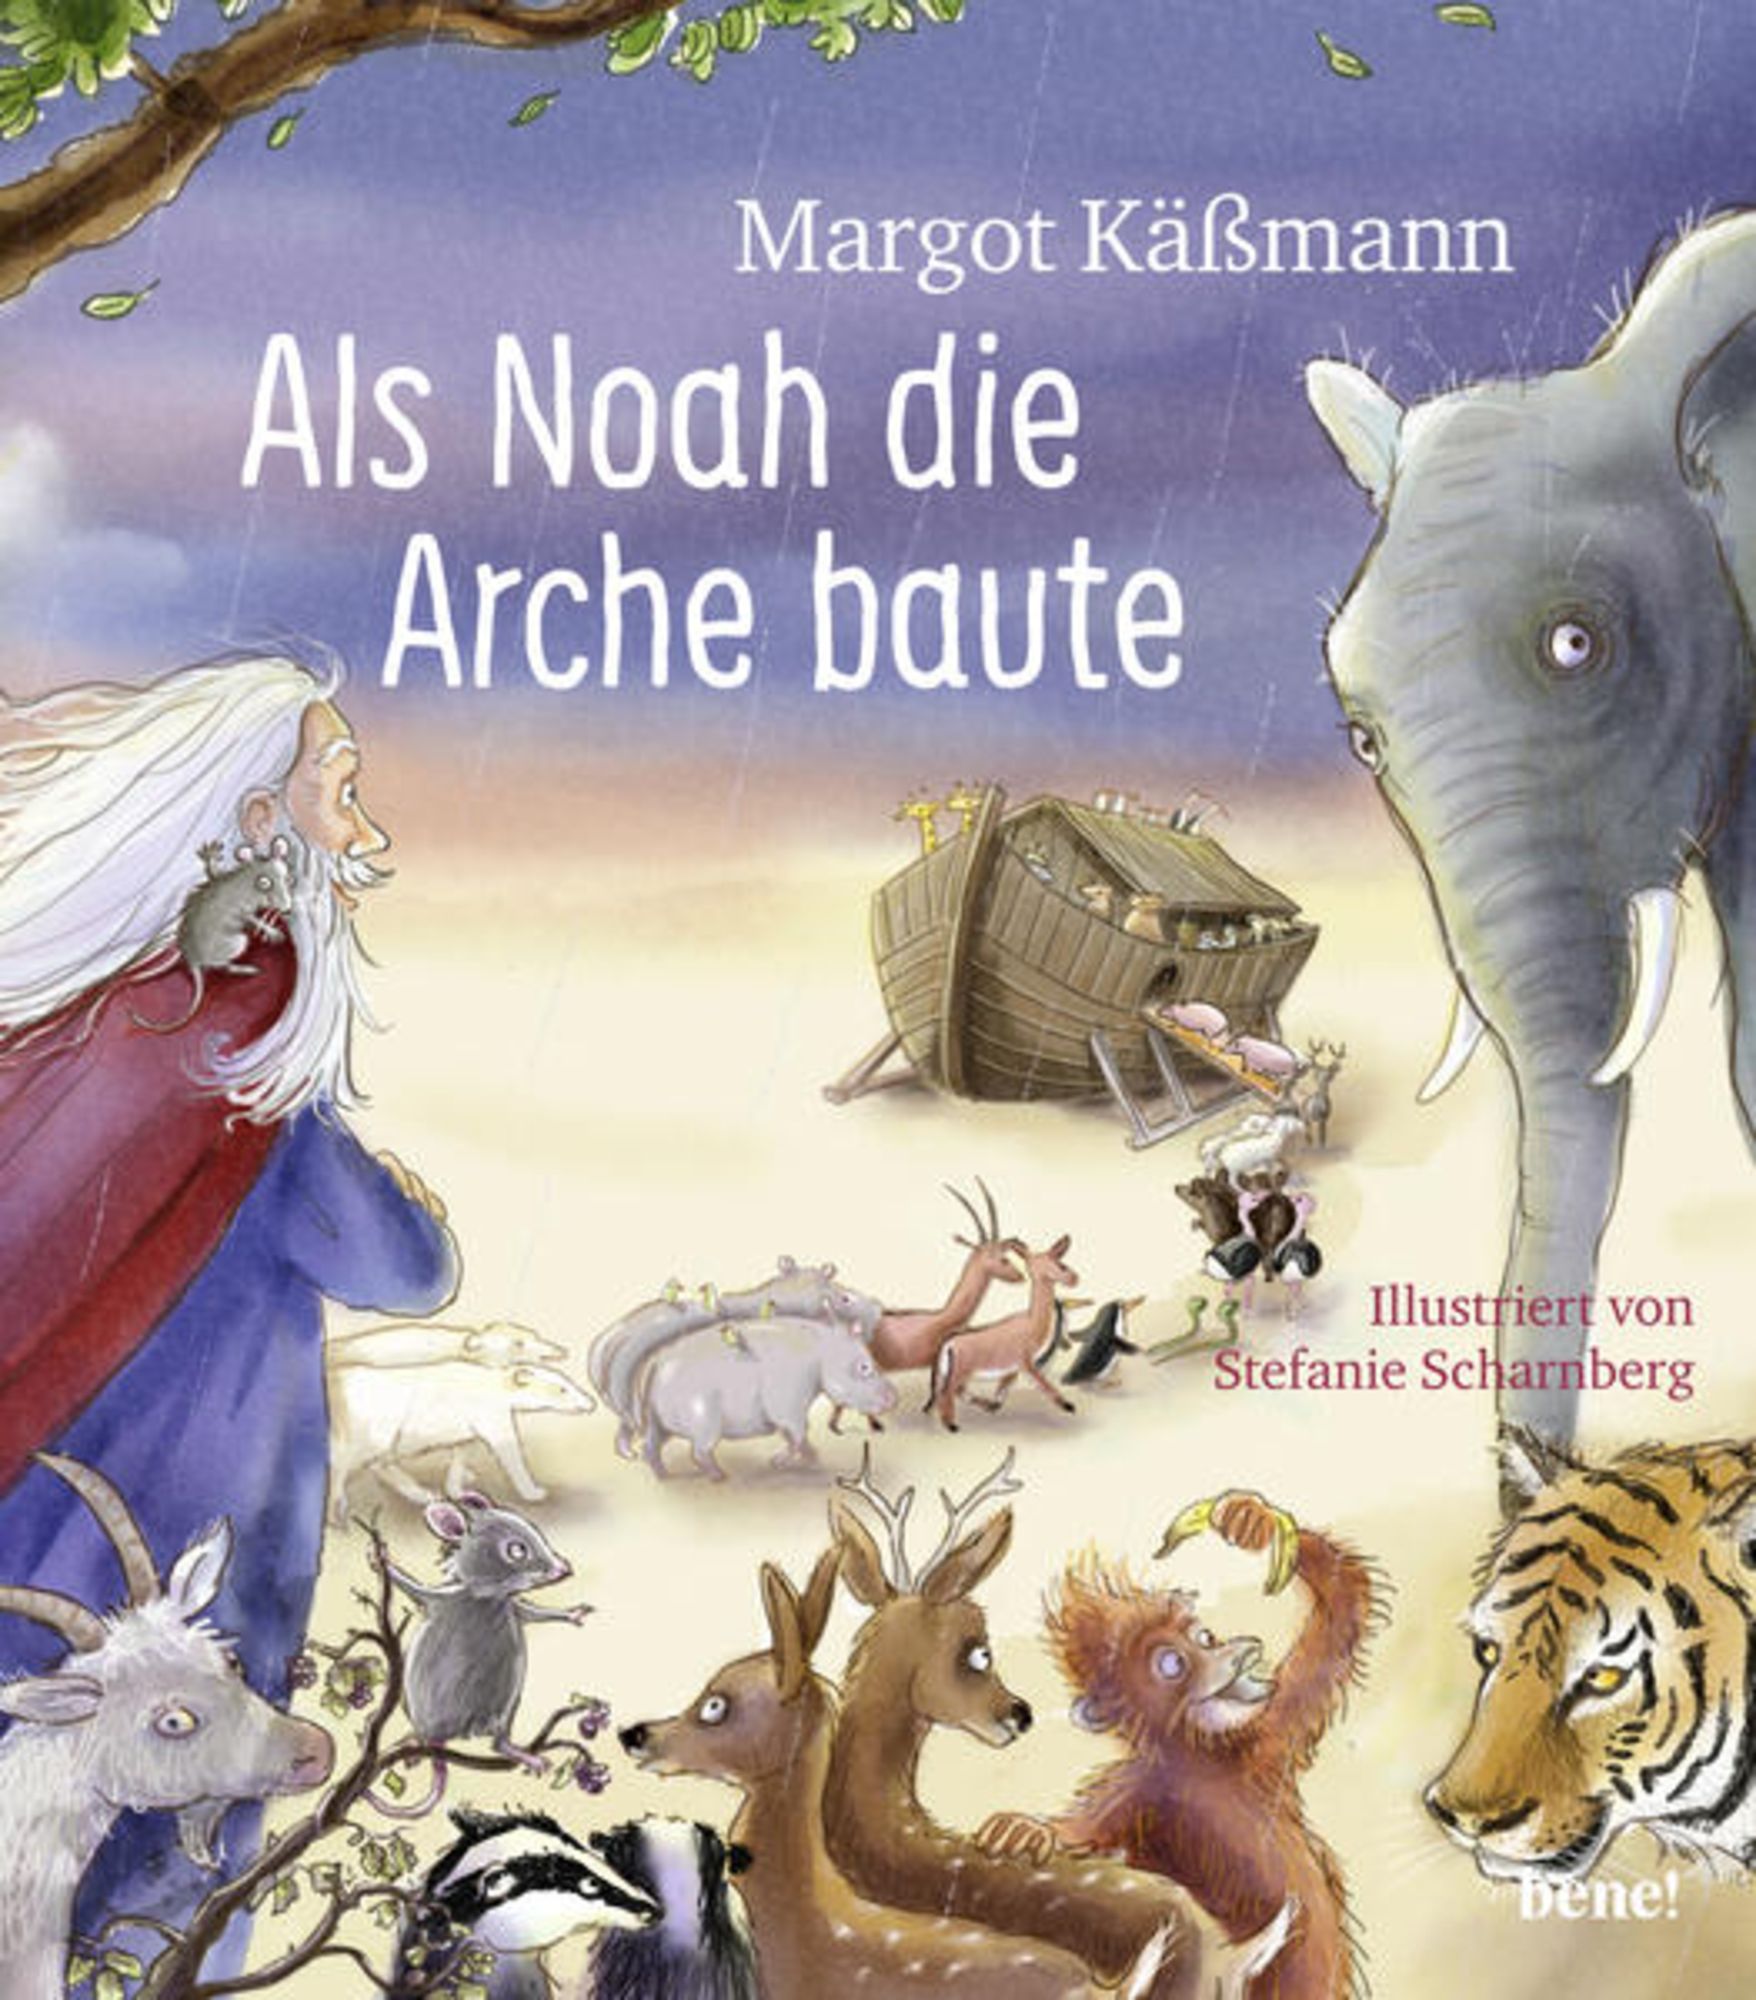 ein - Kinder von Arche Buch Kässmann\' \'Margot Als für \'978-3-96340-126-8\' die Jahren\' Noah ab Bilderbuch - 5 – baute